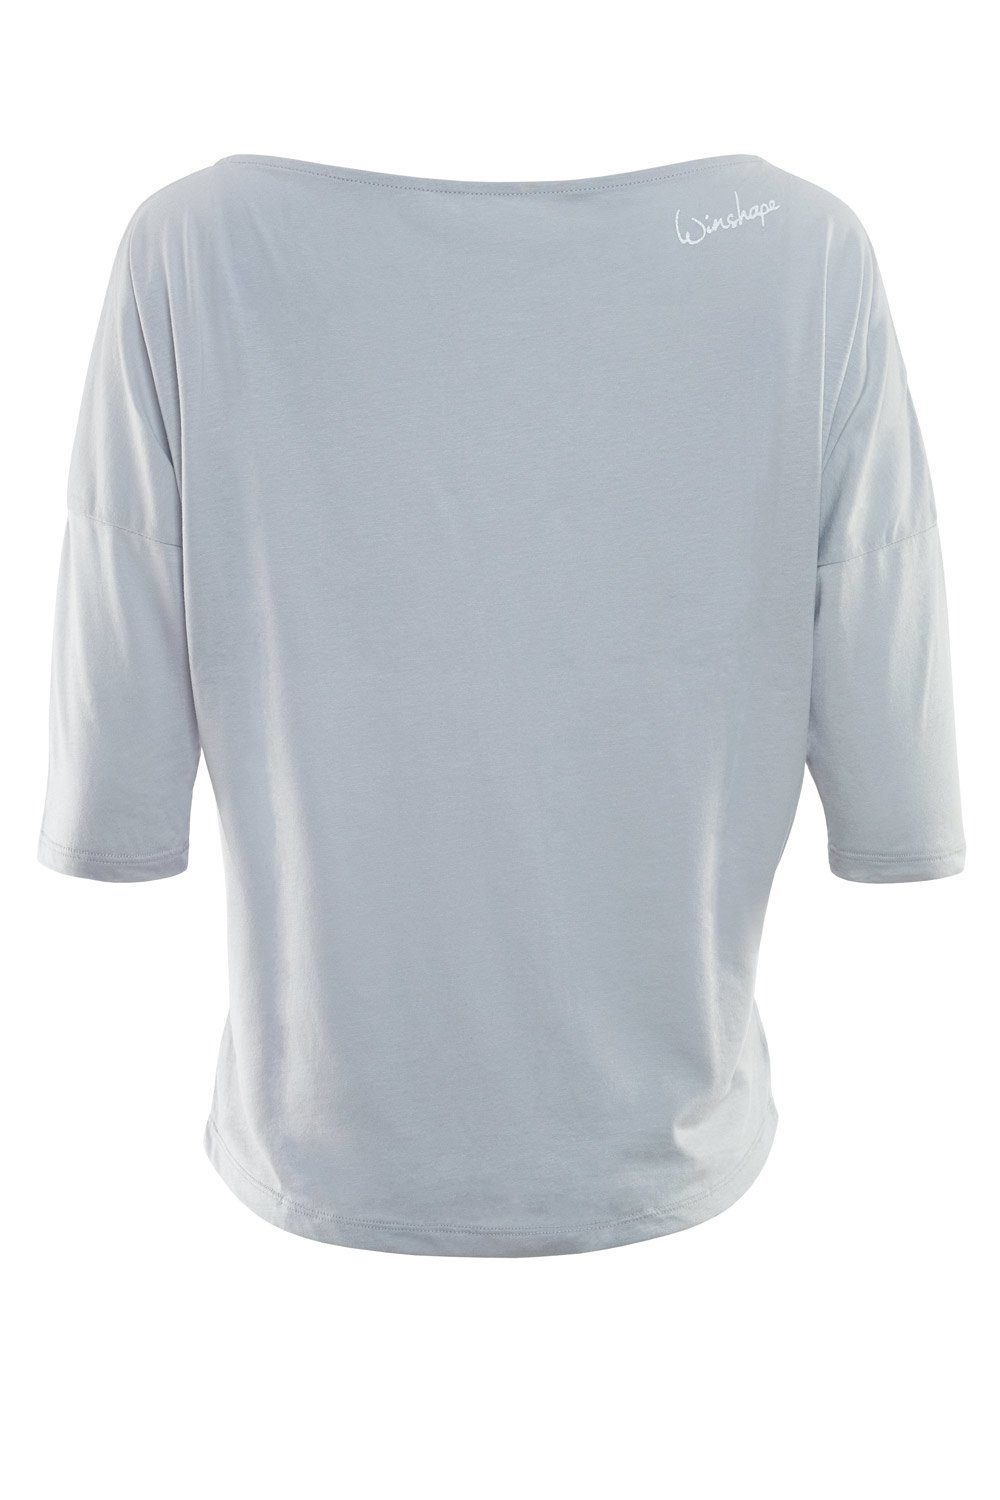 Winshape 3/4-Arm-Shirt weiß leicht mit MCS001 Glitzer-Aufdruck cool weißem glitzer grey ultra 